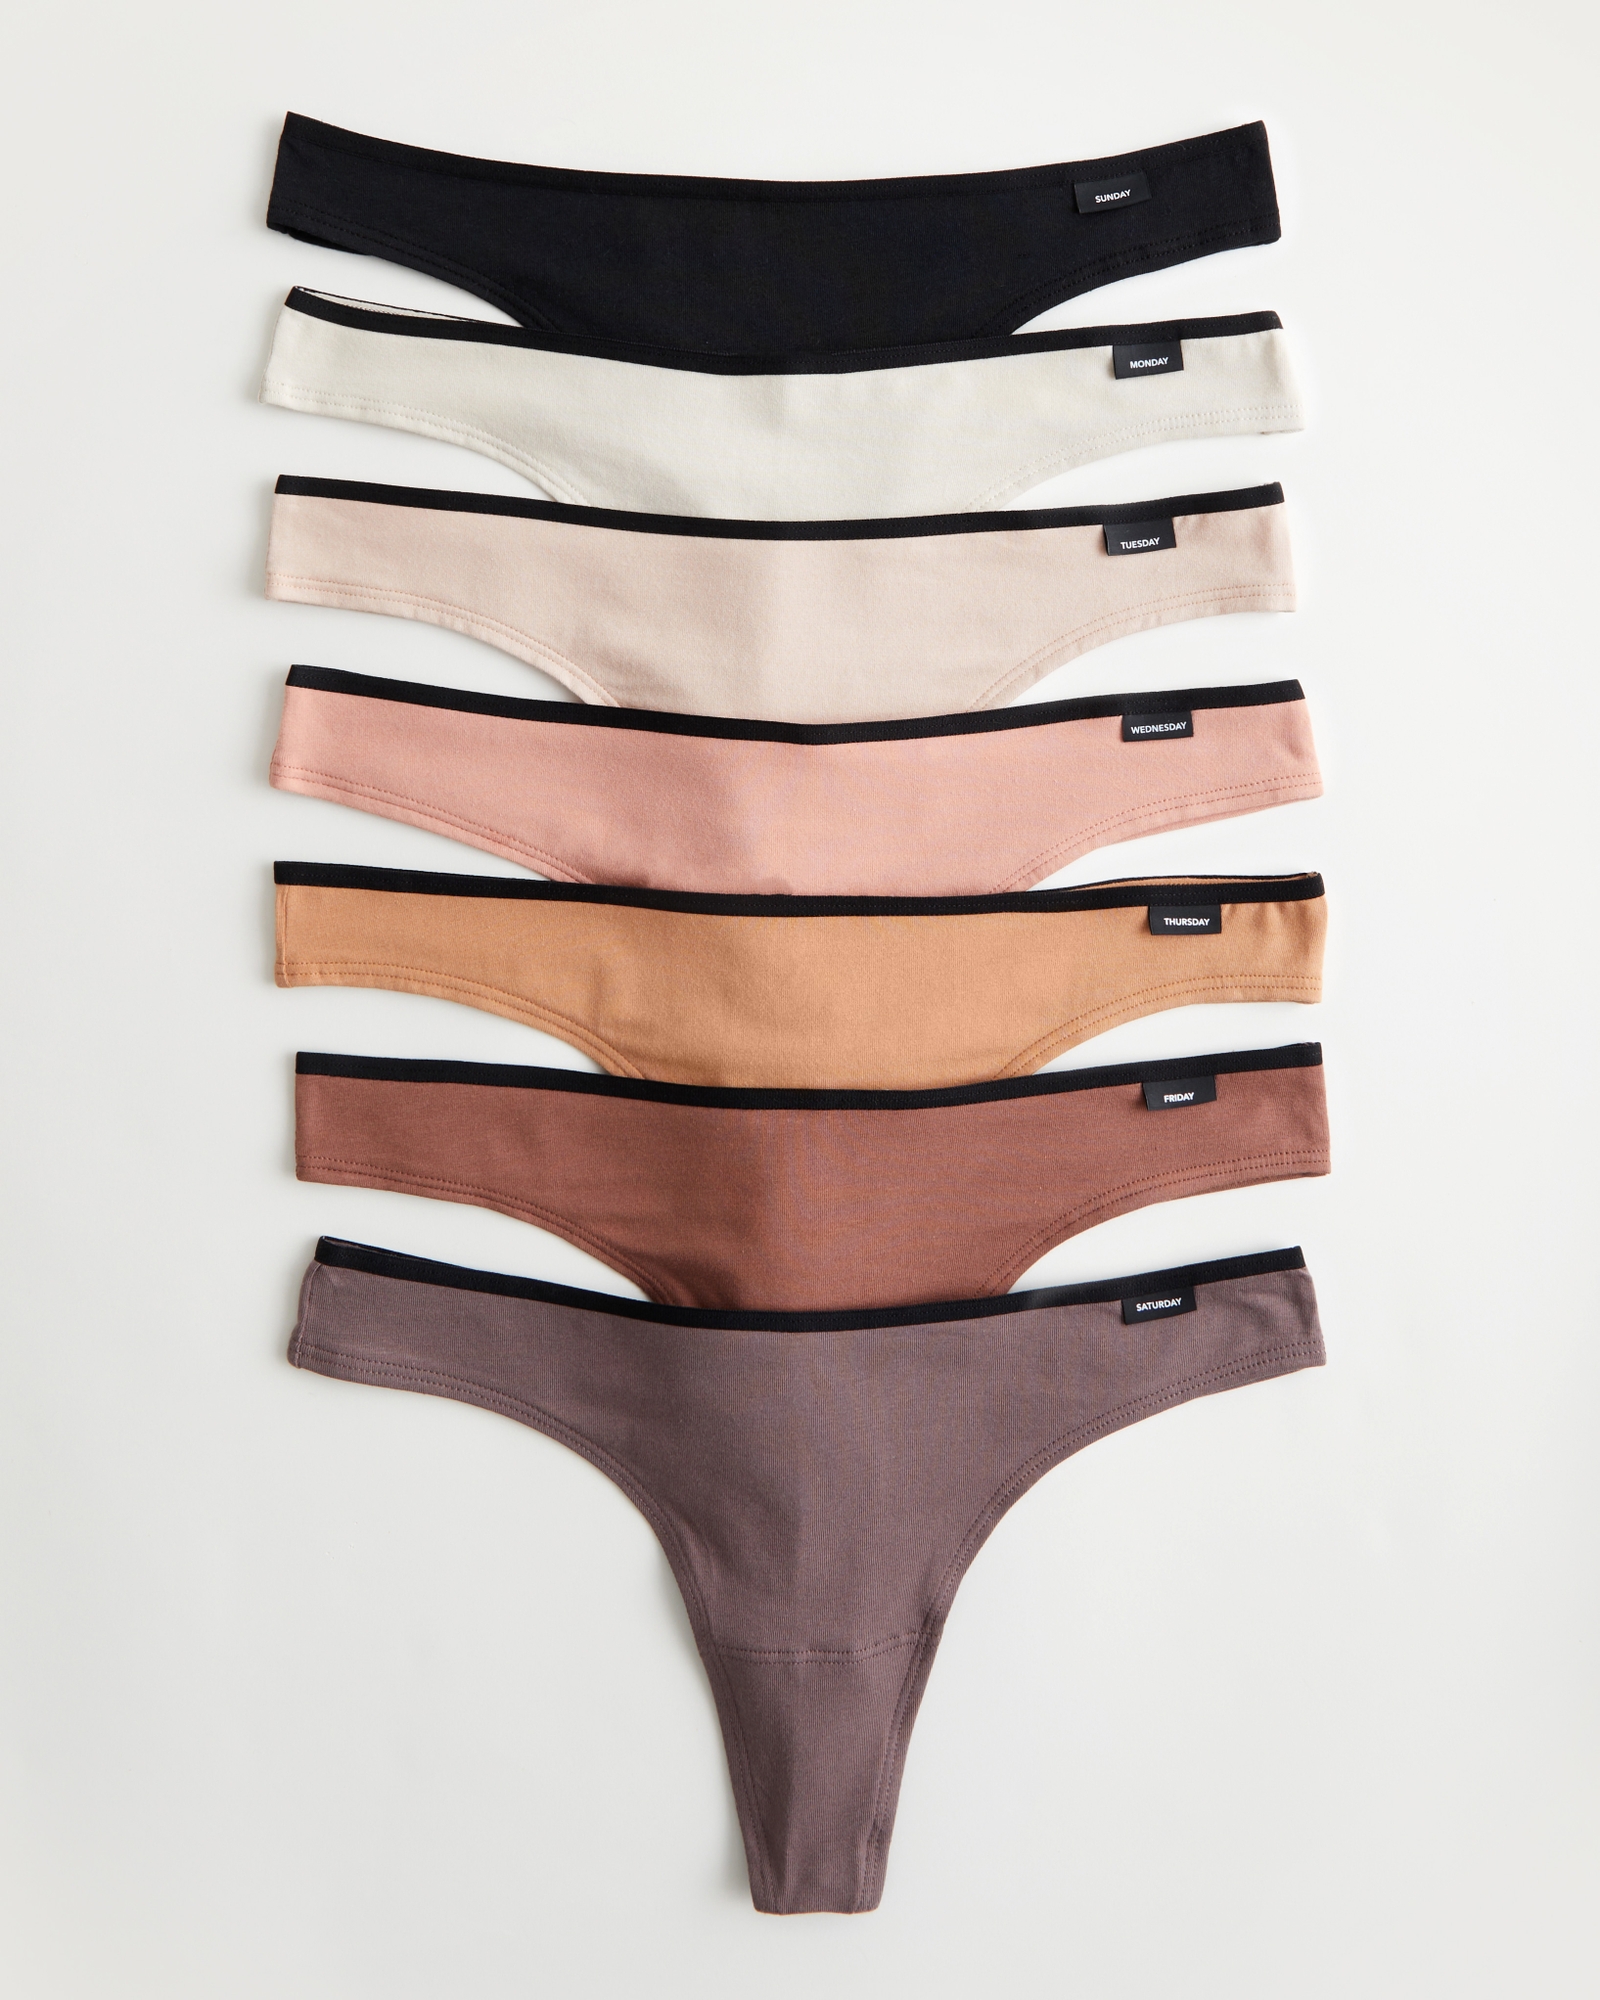 Women's Gilly Hicks Cotton Blend Thong Underwear 7-Pack, Women's Bras &  Underwear